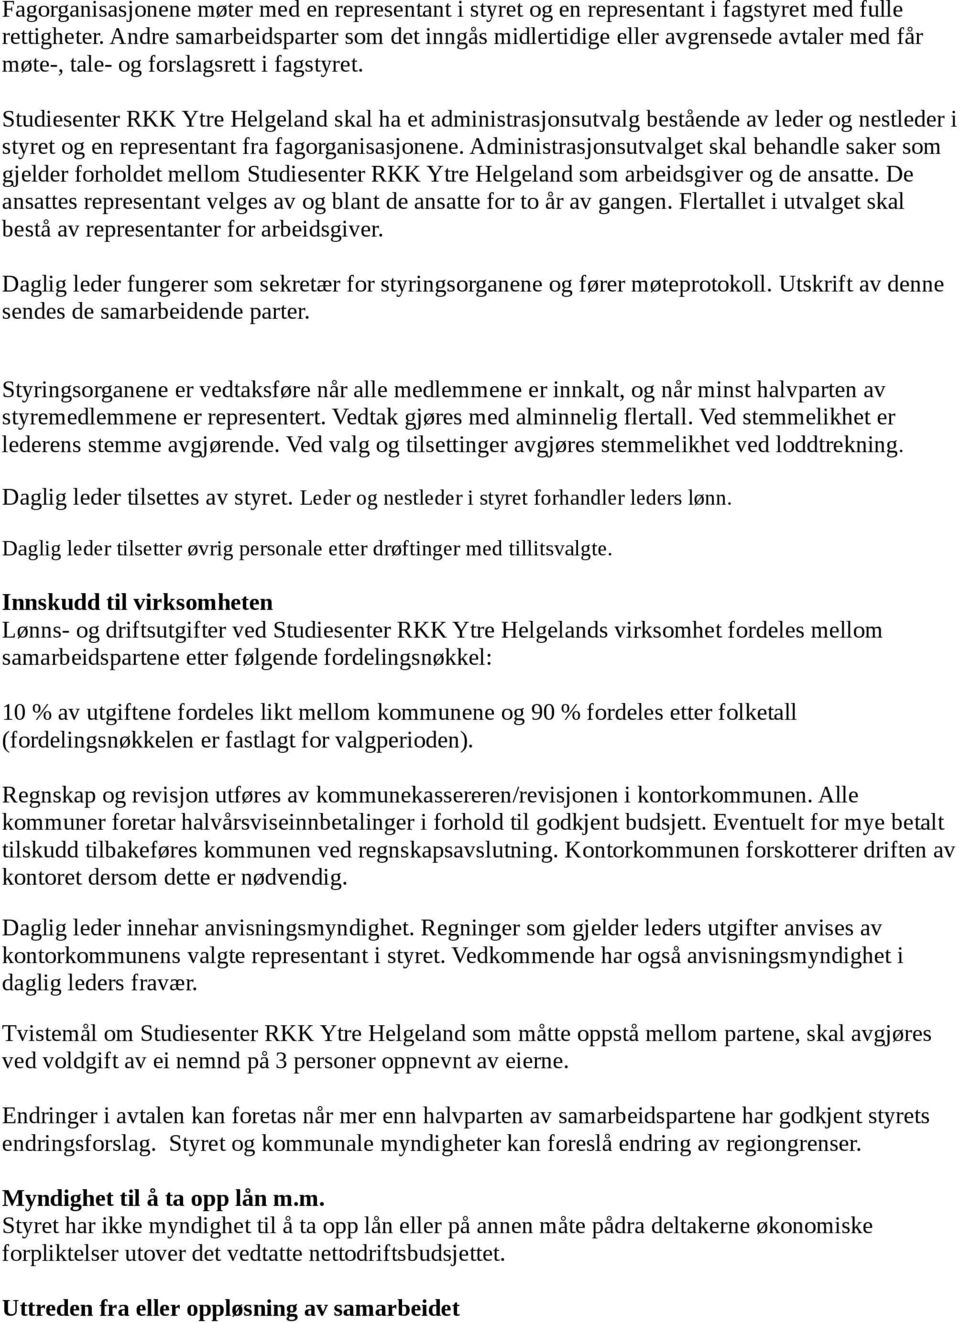 Studiesenter RKK Ytre Helgeland skal ha et administrasjonsutvalg bestående av leder og nestleder i styret og en representant fra fagorganisasjonene.